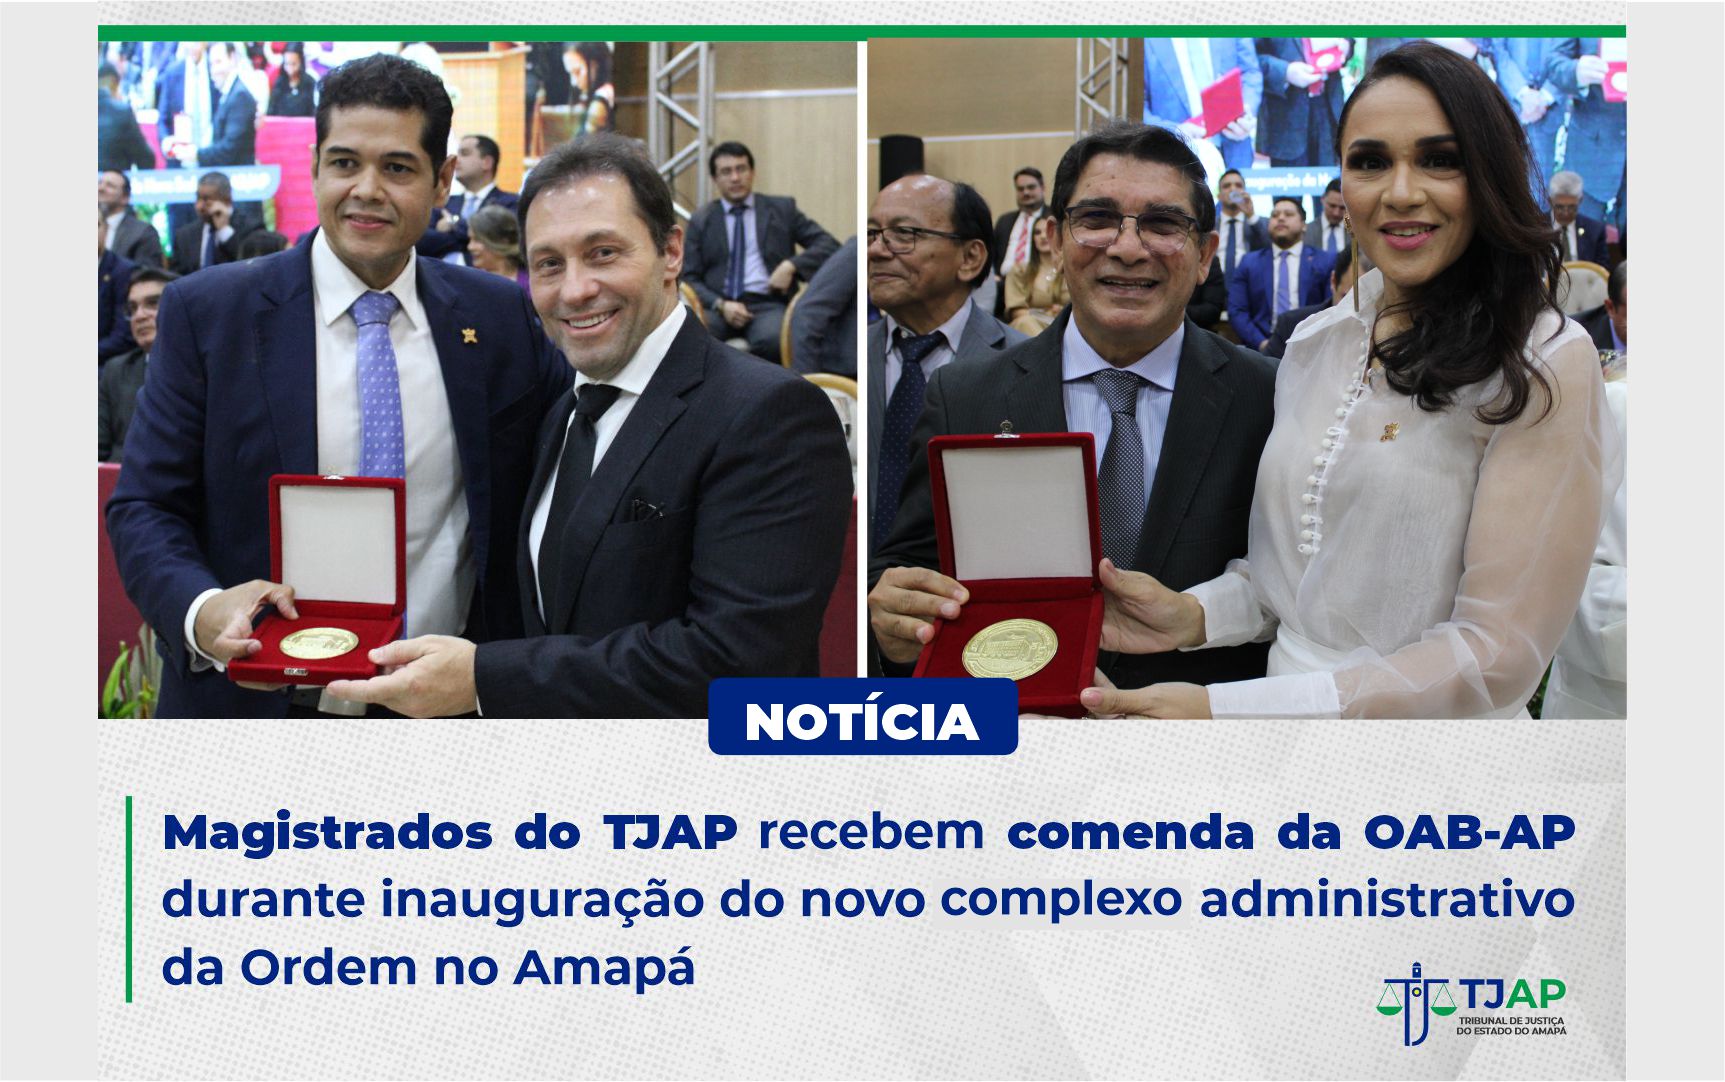 Magistrados_do_TJAP_recebem_comenda_da_OAB-AP_03.jpg